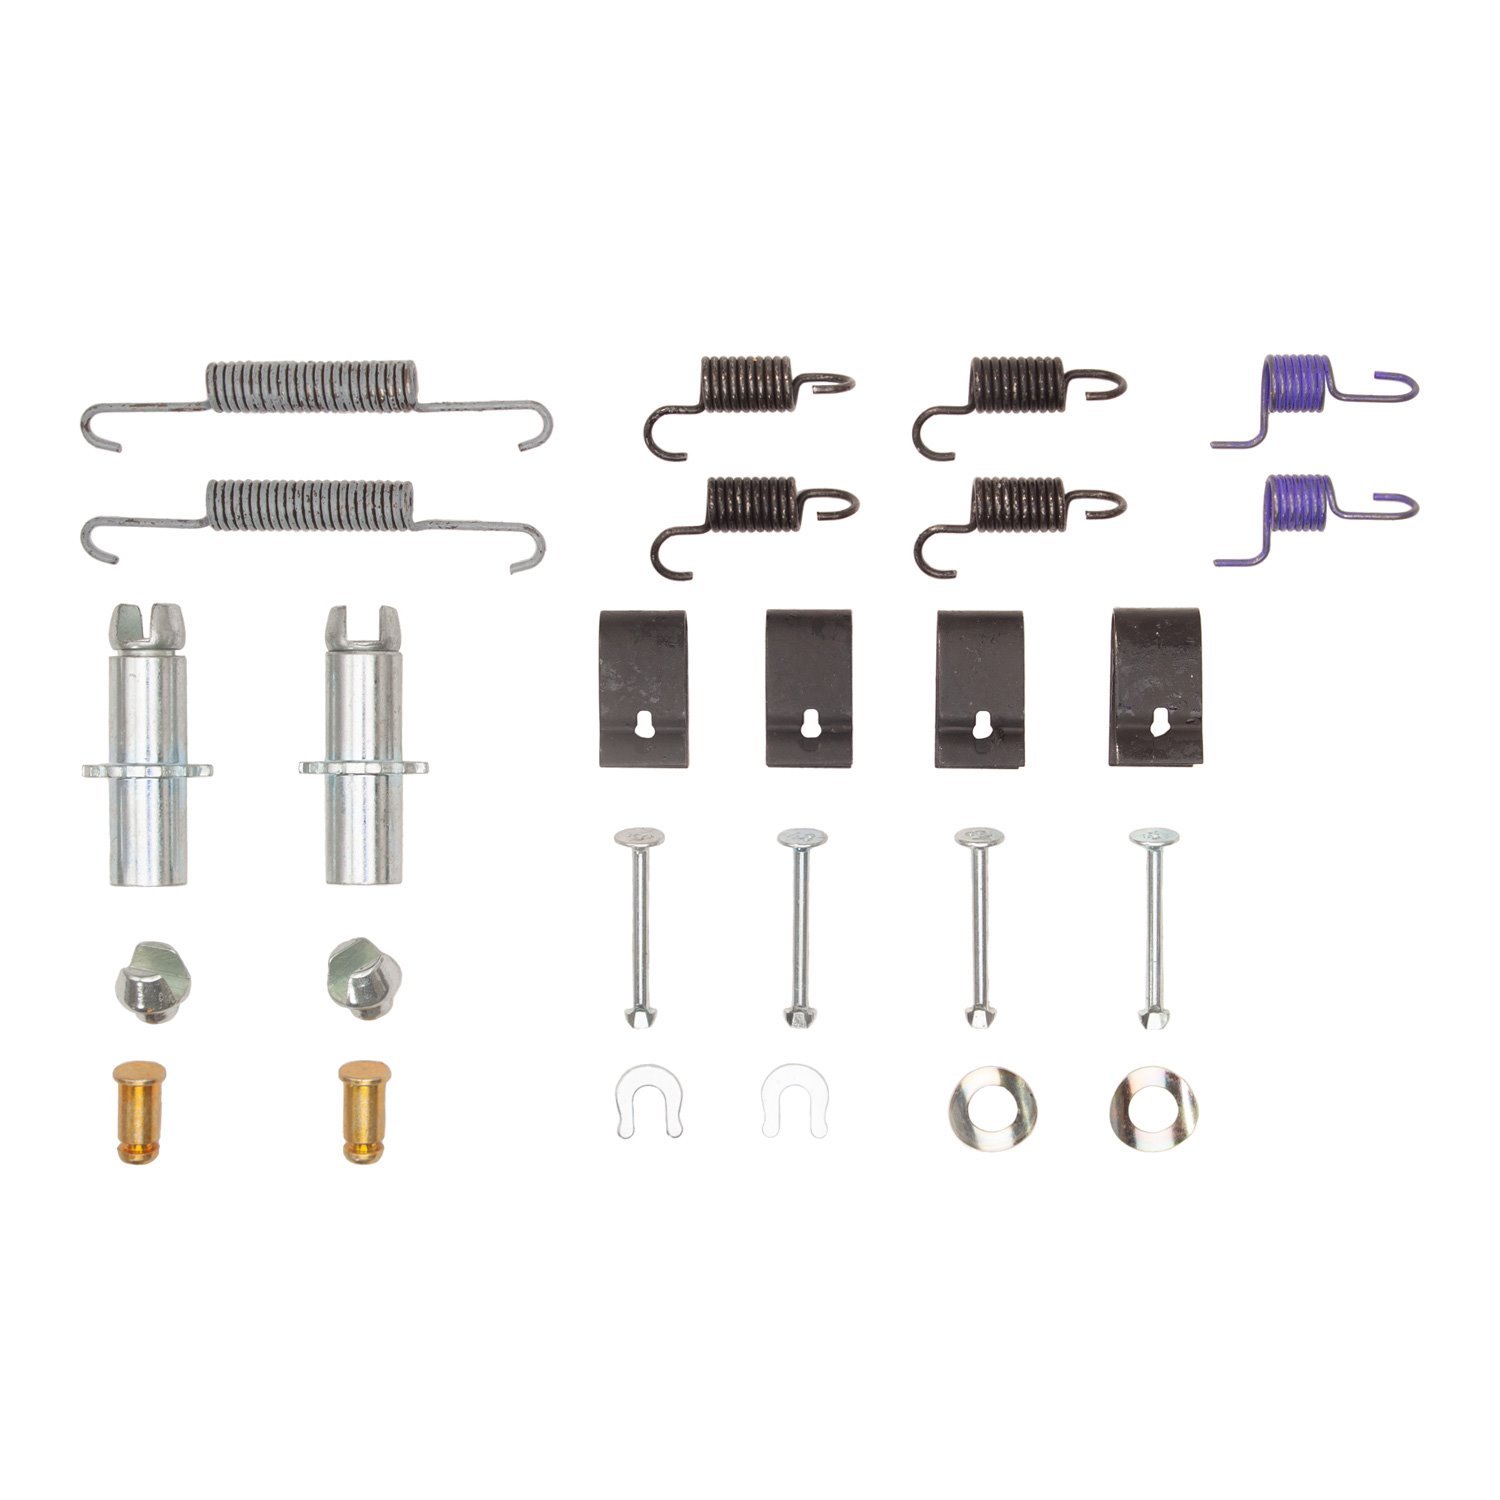 370-13007 Drum Brake Hardware Kit, Fits Select Multiple Makes/Models, Position: Parking